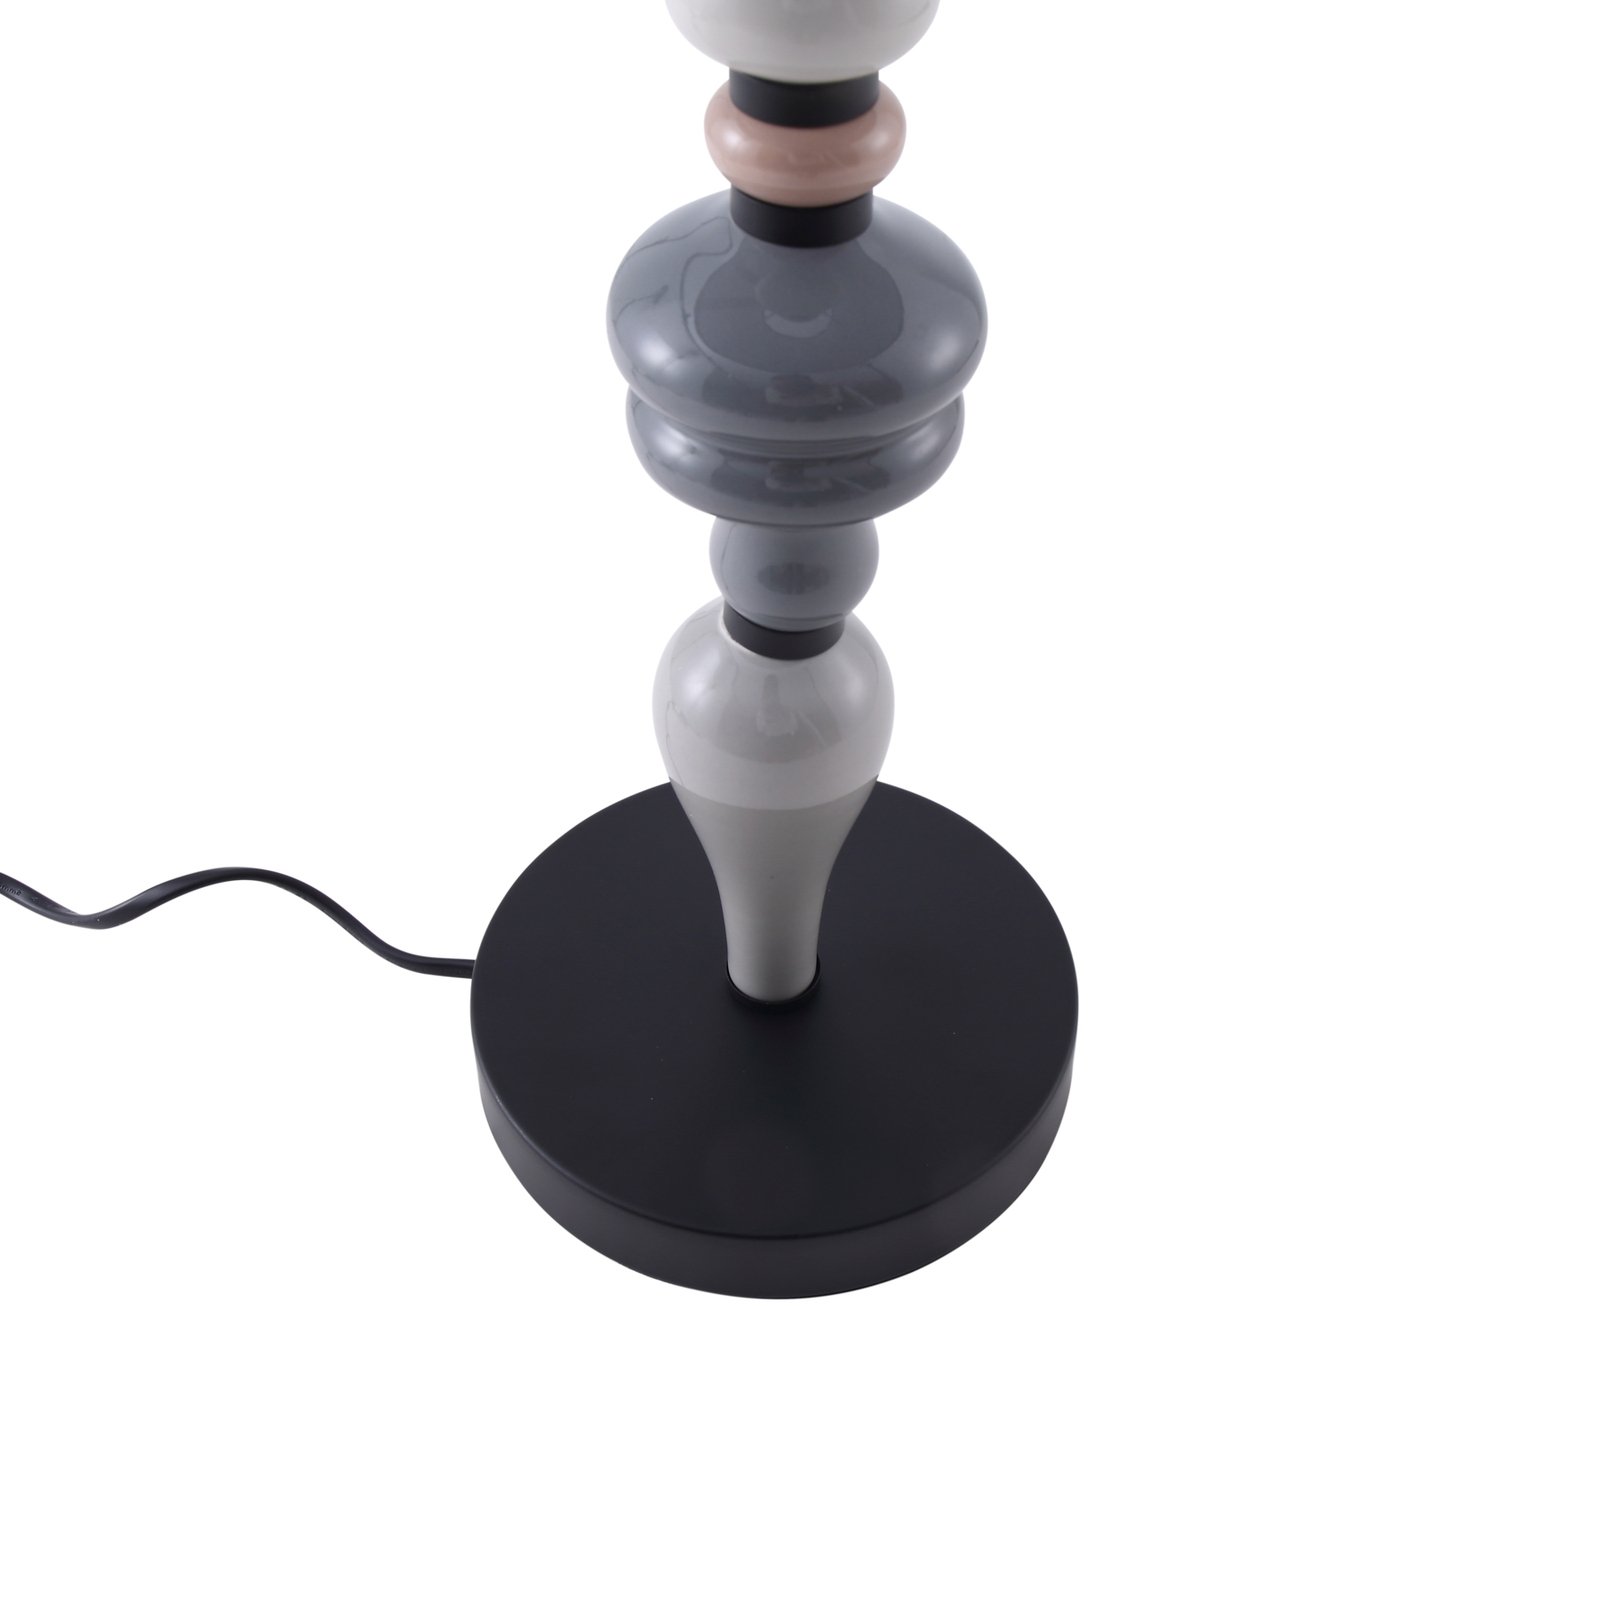 Lindby lampe à poser Haldorin, gris/noir, textile, 62 cm